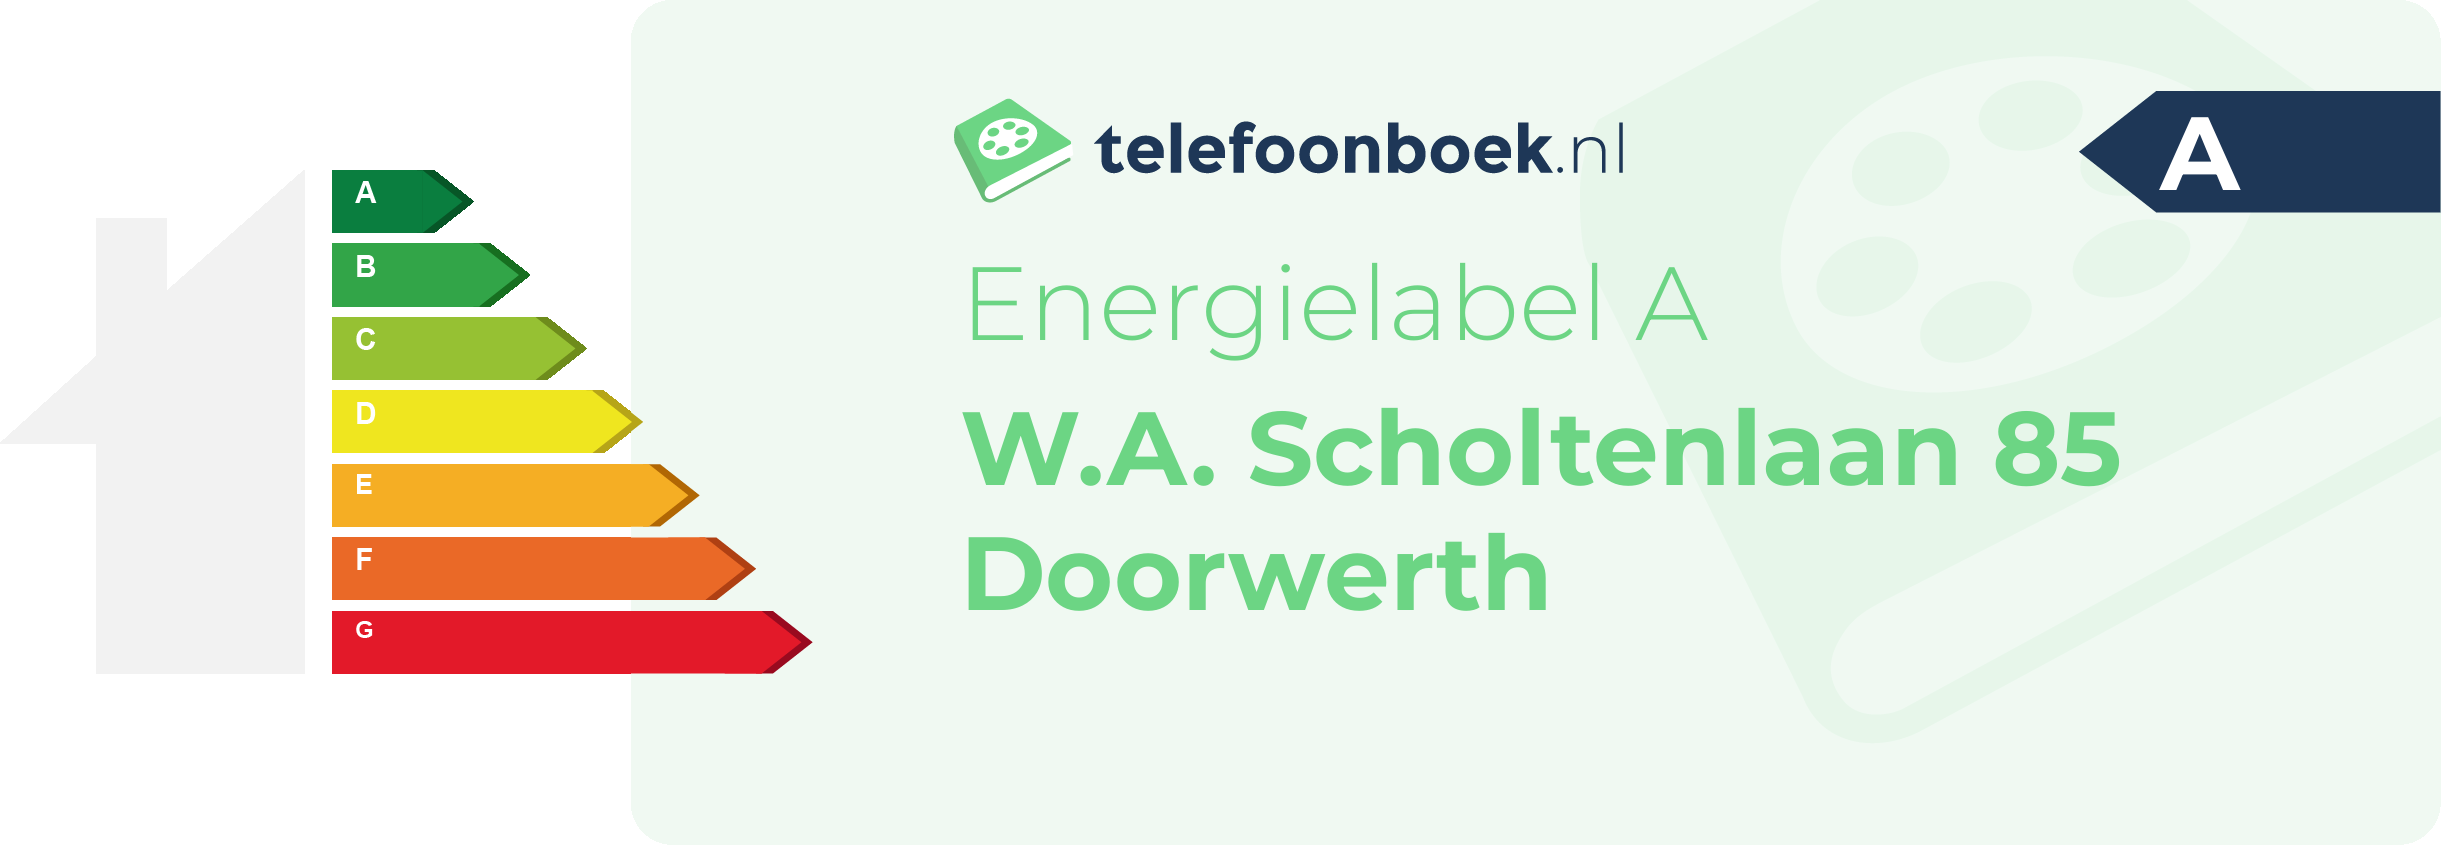 Energielabel W.A. Scholtenlaan 85 Doorwerth